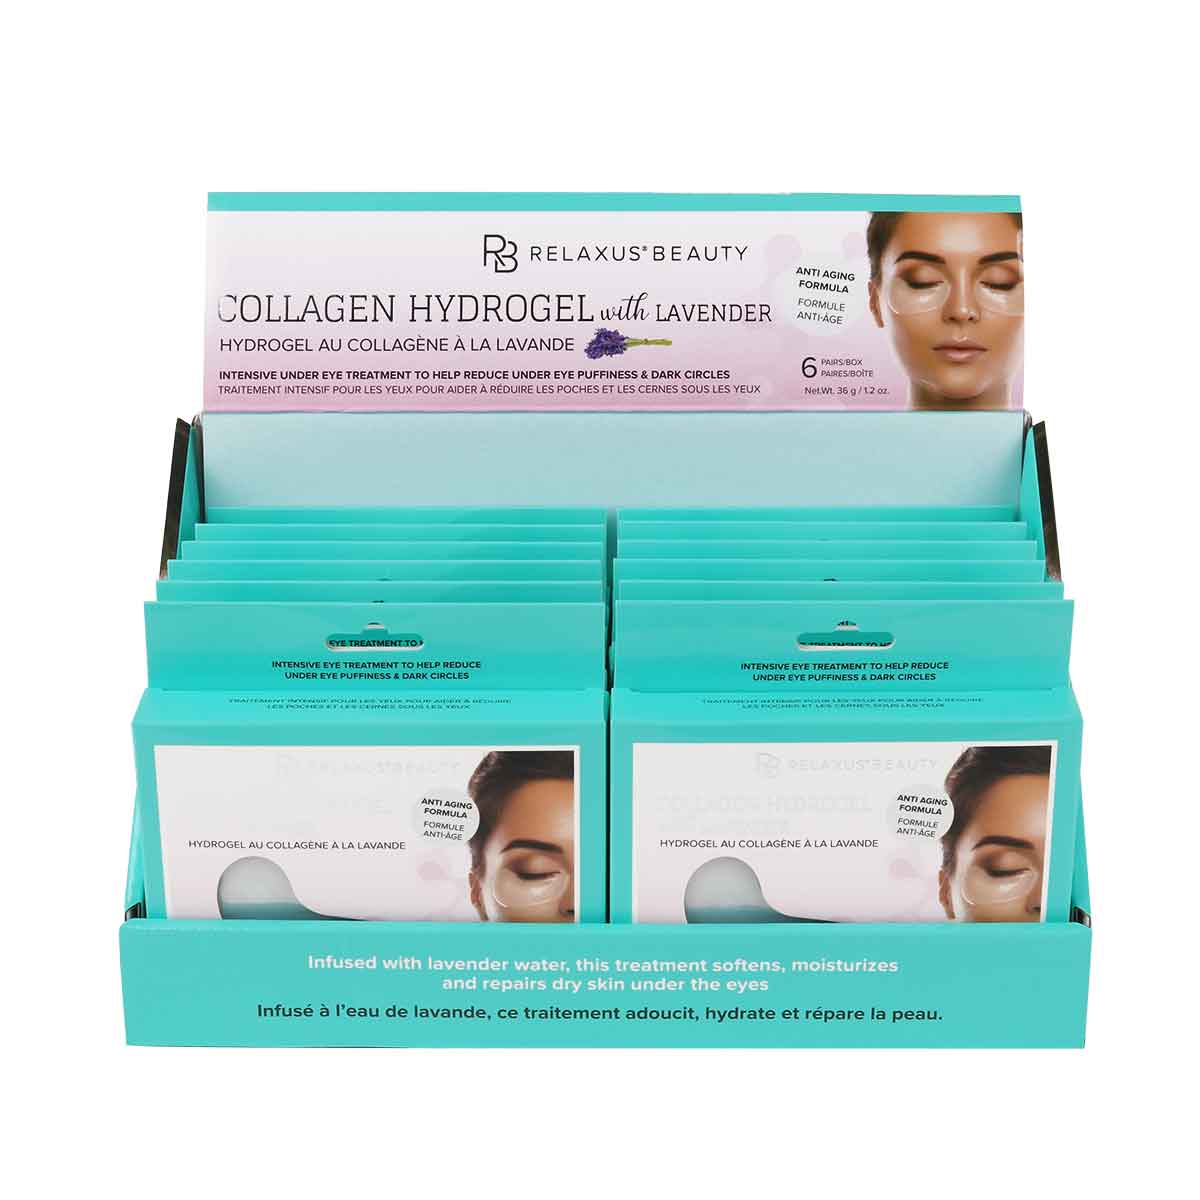 Wholesale Collagen Hydrogel and Lavender Eye Masks - Displayer of 12